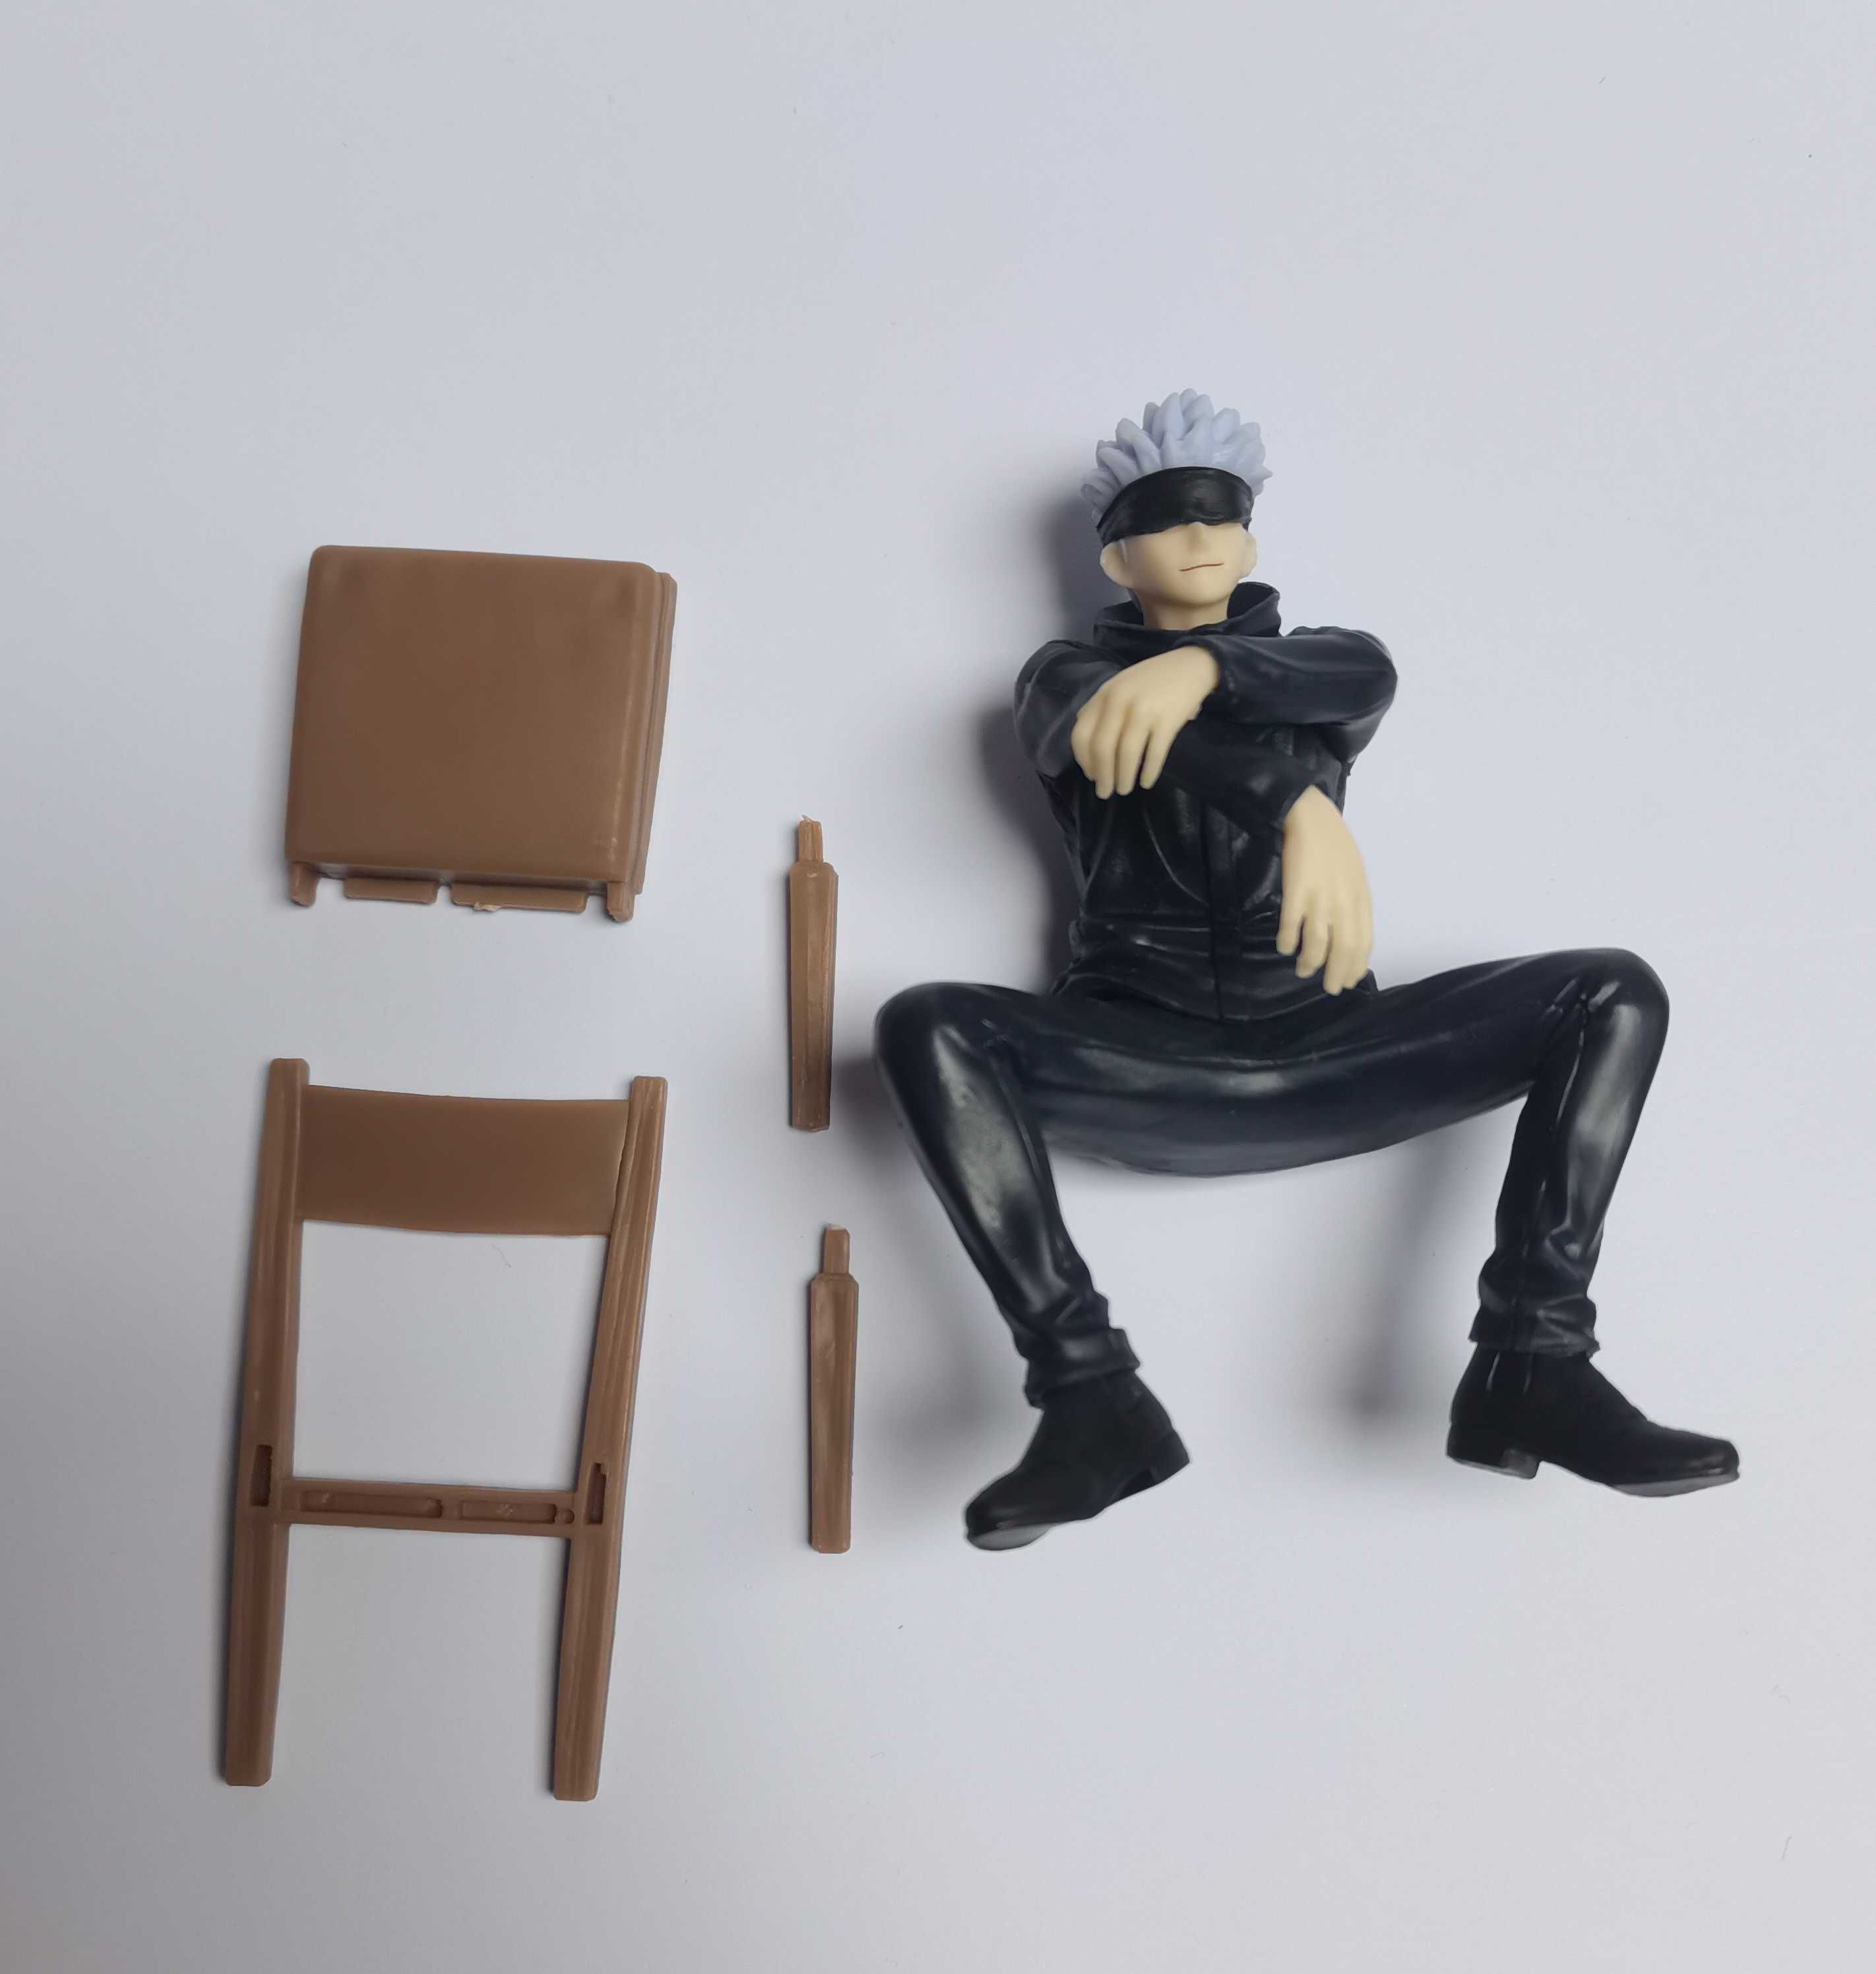 Satoru Gojo siedzący na krześle (Jujutsu Kaisen) - figurka + pudełko